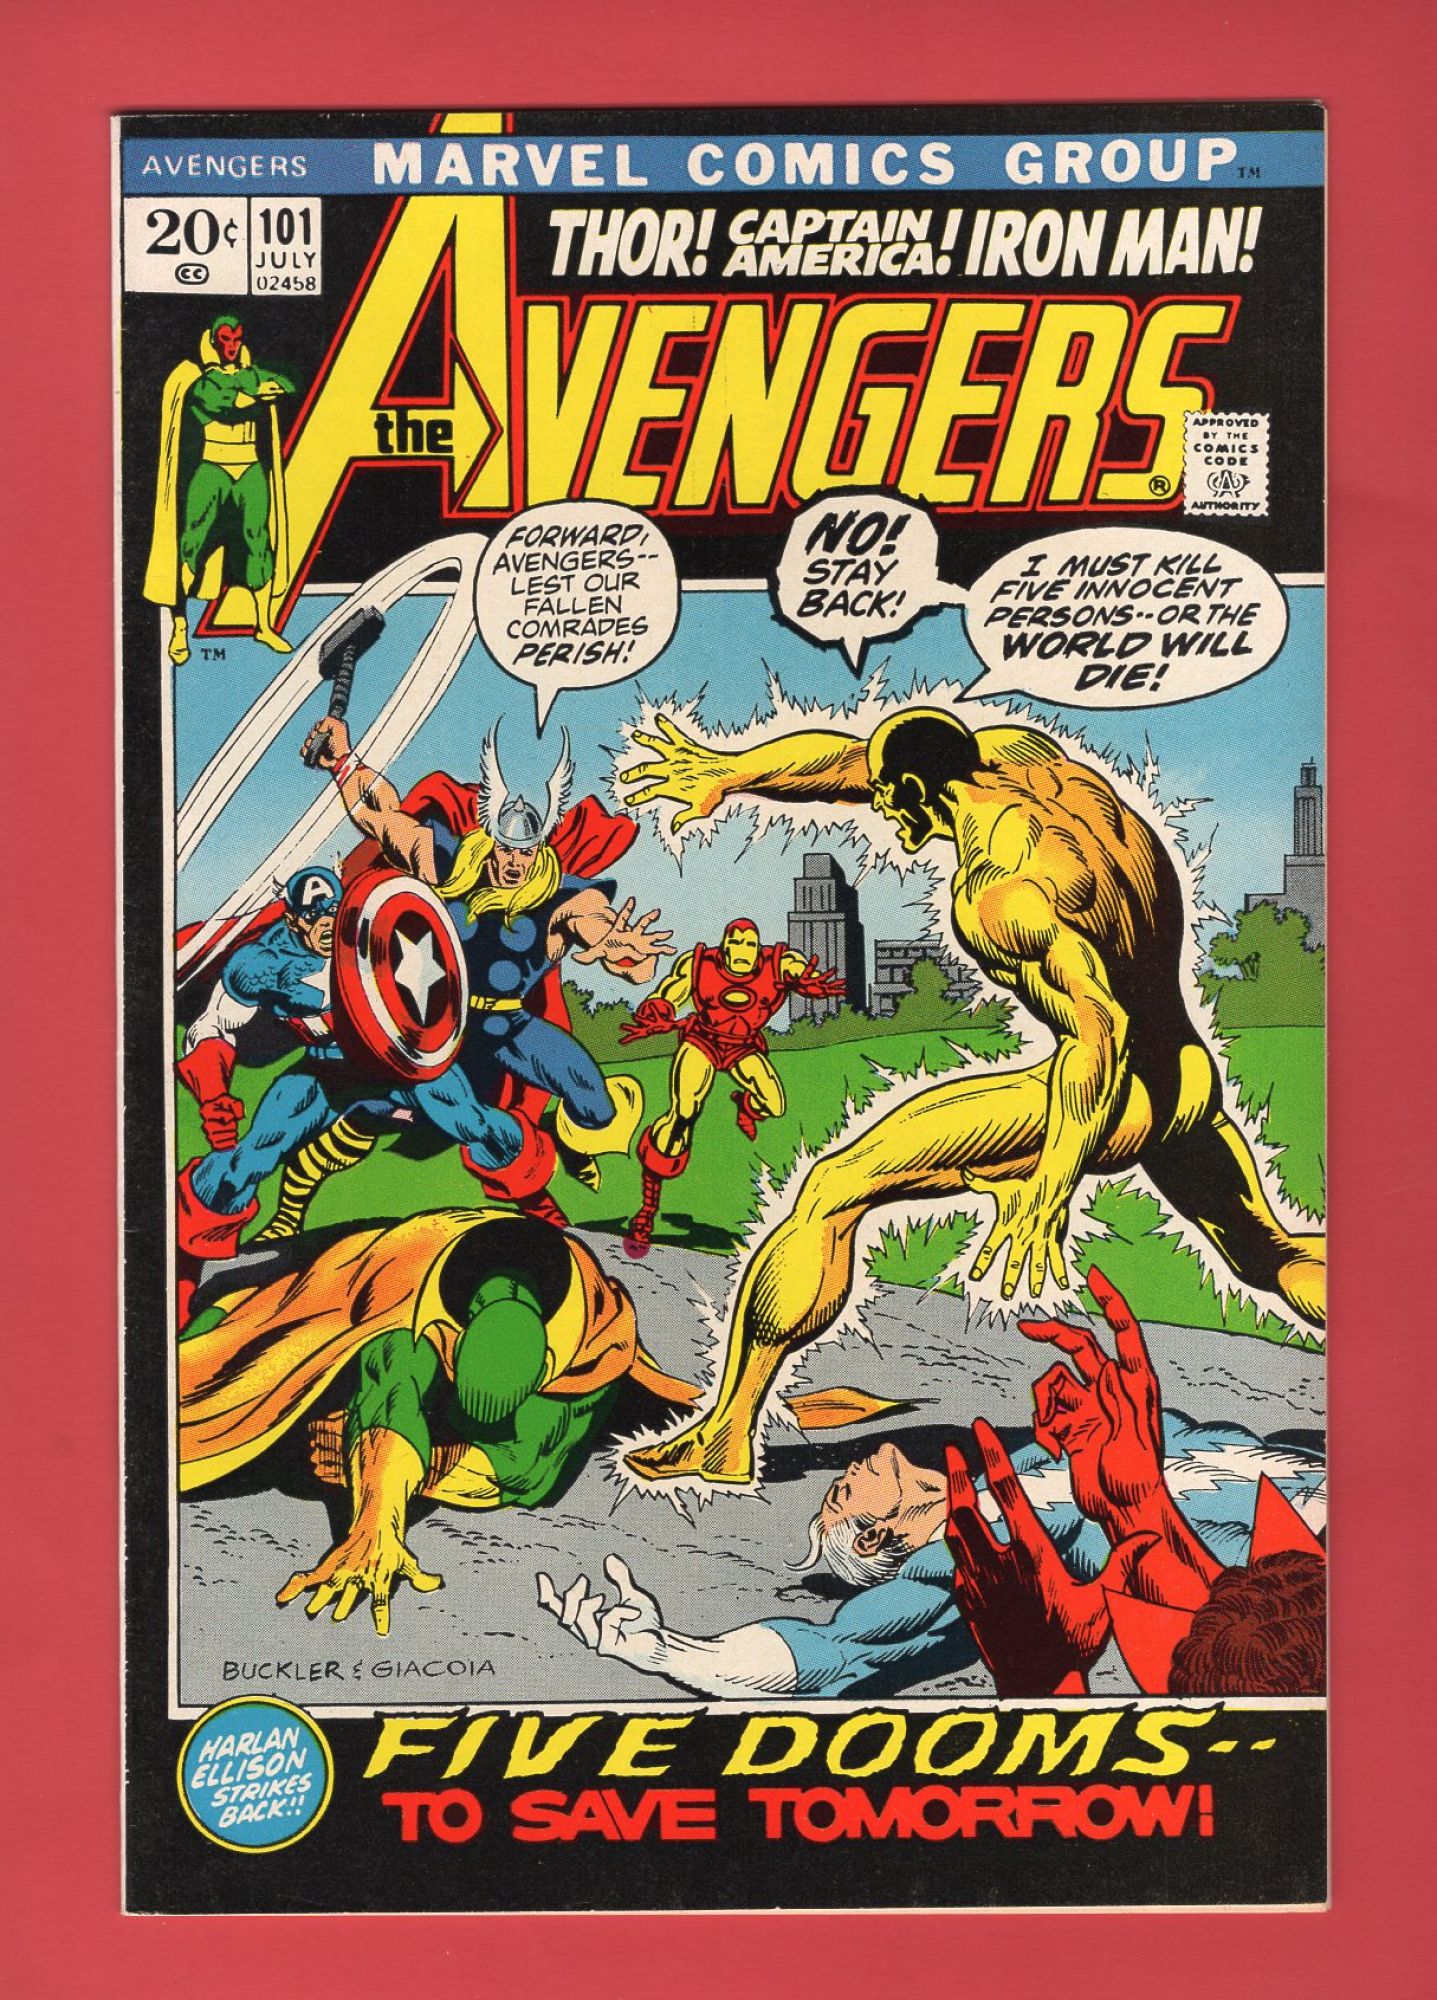 Avengers #101, Jul 1972, 8.5 VF+